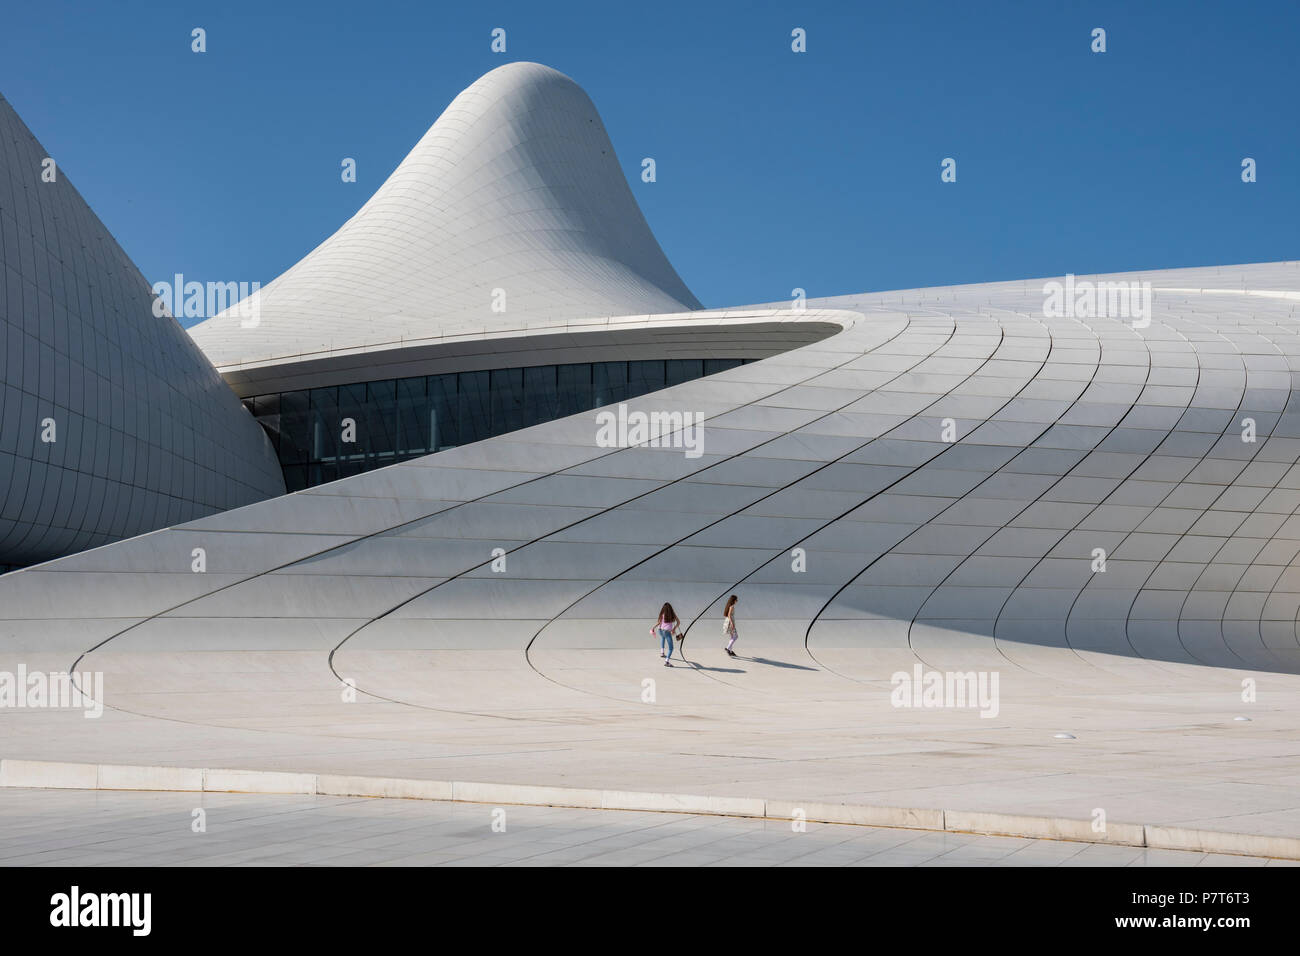 The Heydar Aliyev Center in Baku,Azerbaijan Stock Photo